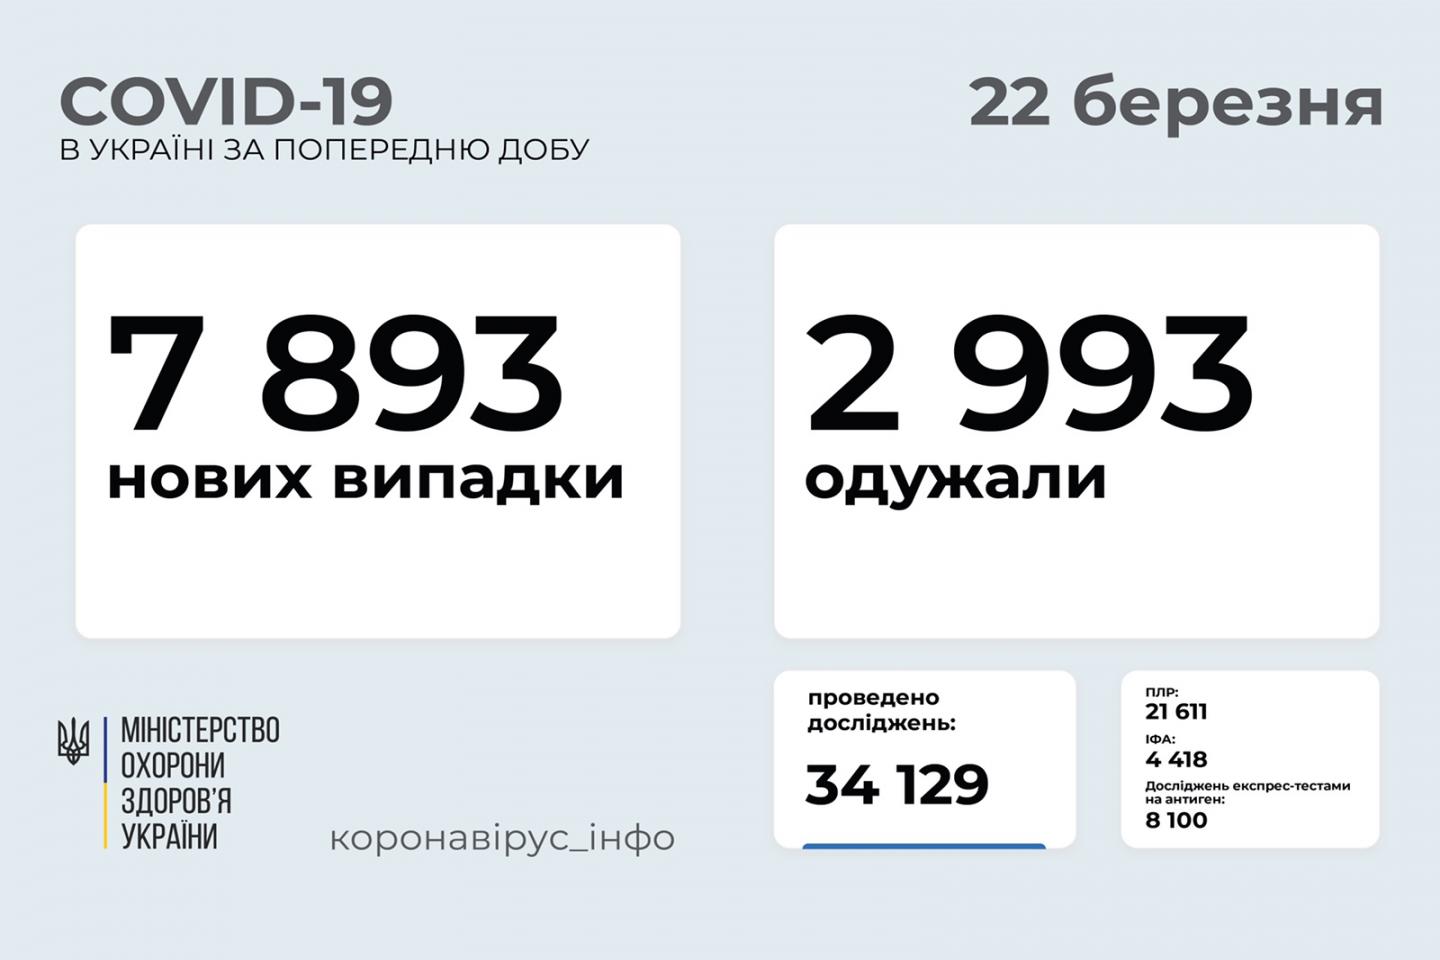 http://dunrada.gov.ua/uploadfile/archive_news/2021/03/22/2021-03-22_6093/images/images-6940.jpg